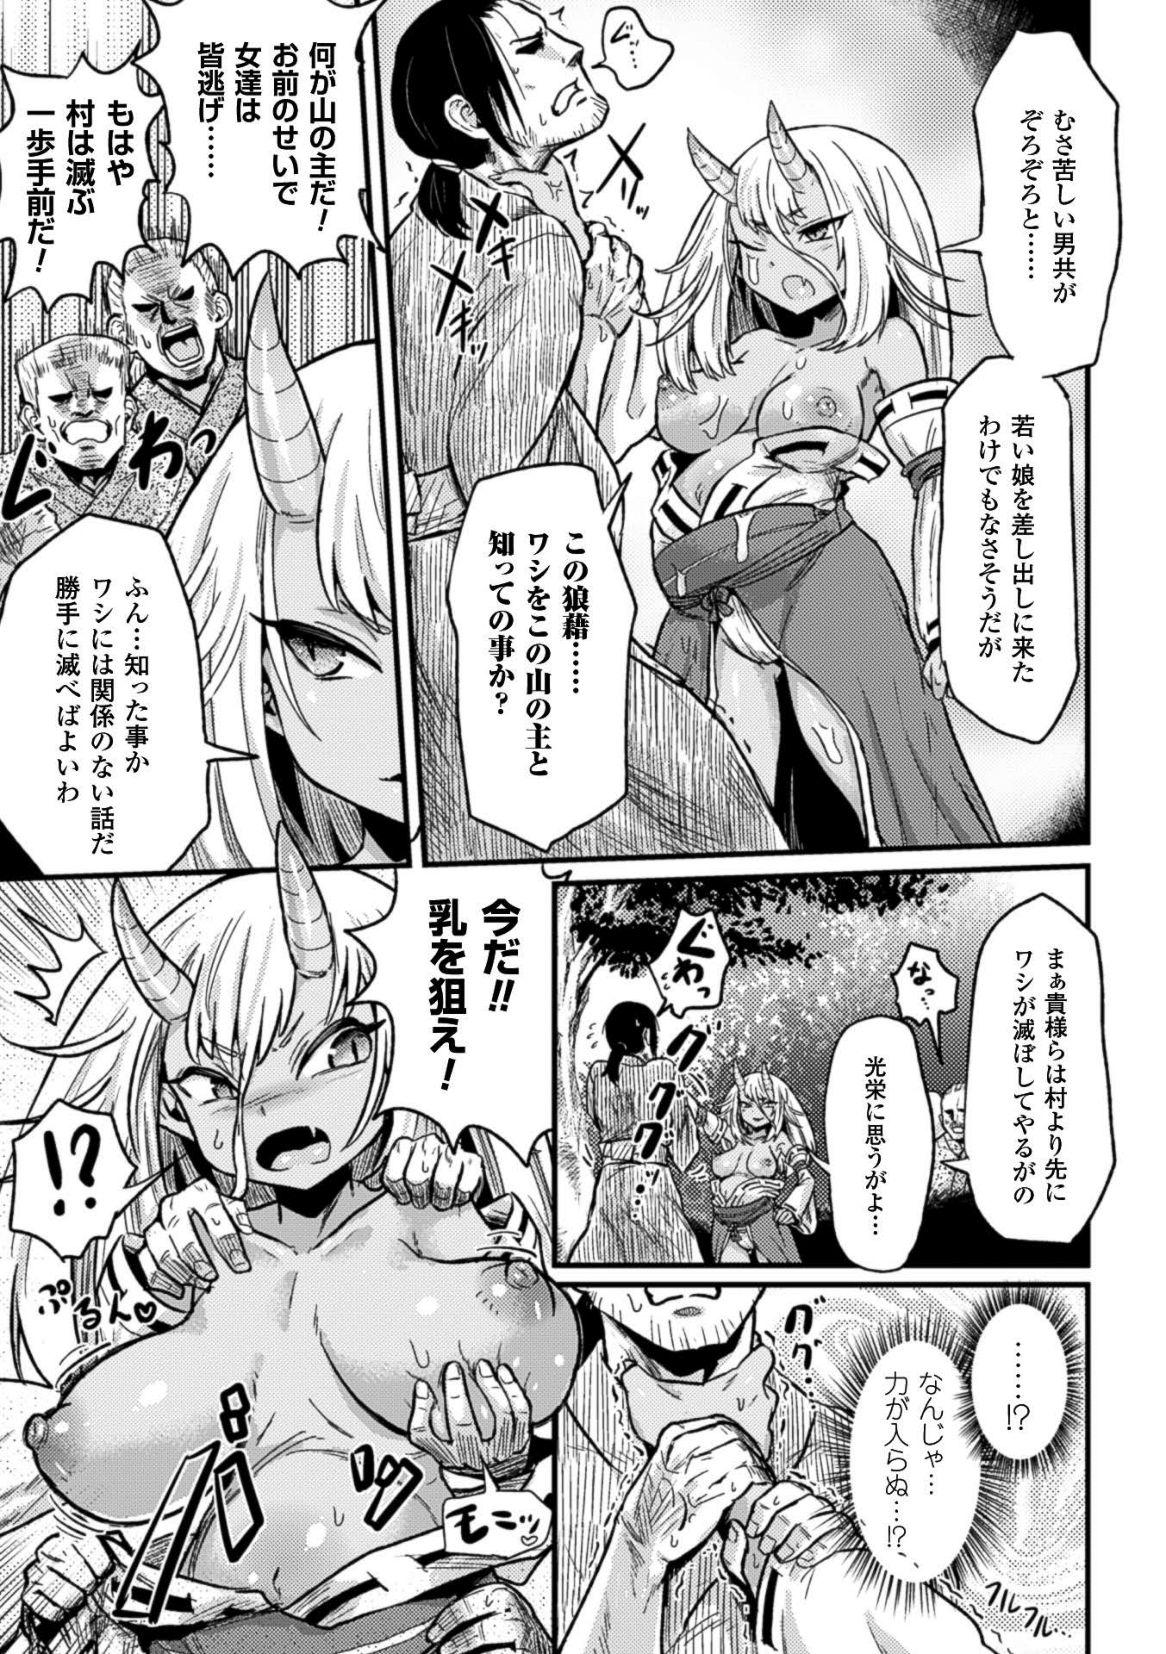 2D Comic Magazine Botebara Sex de Nikubenki Ochi! Vol. 2 6